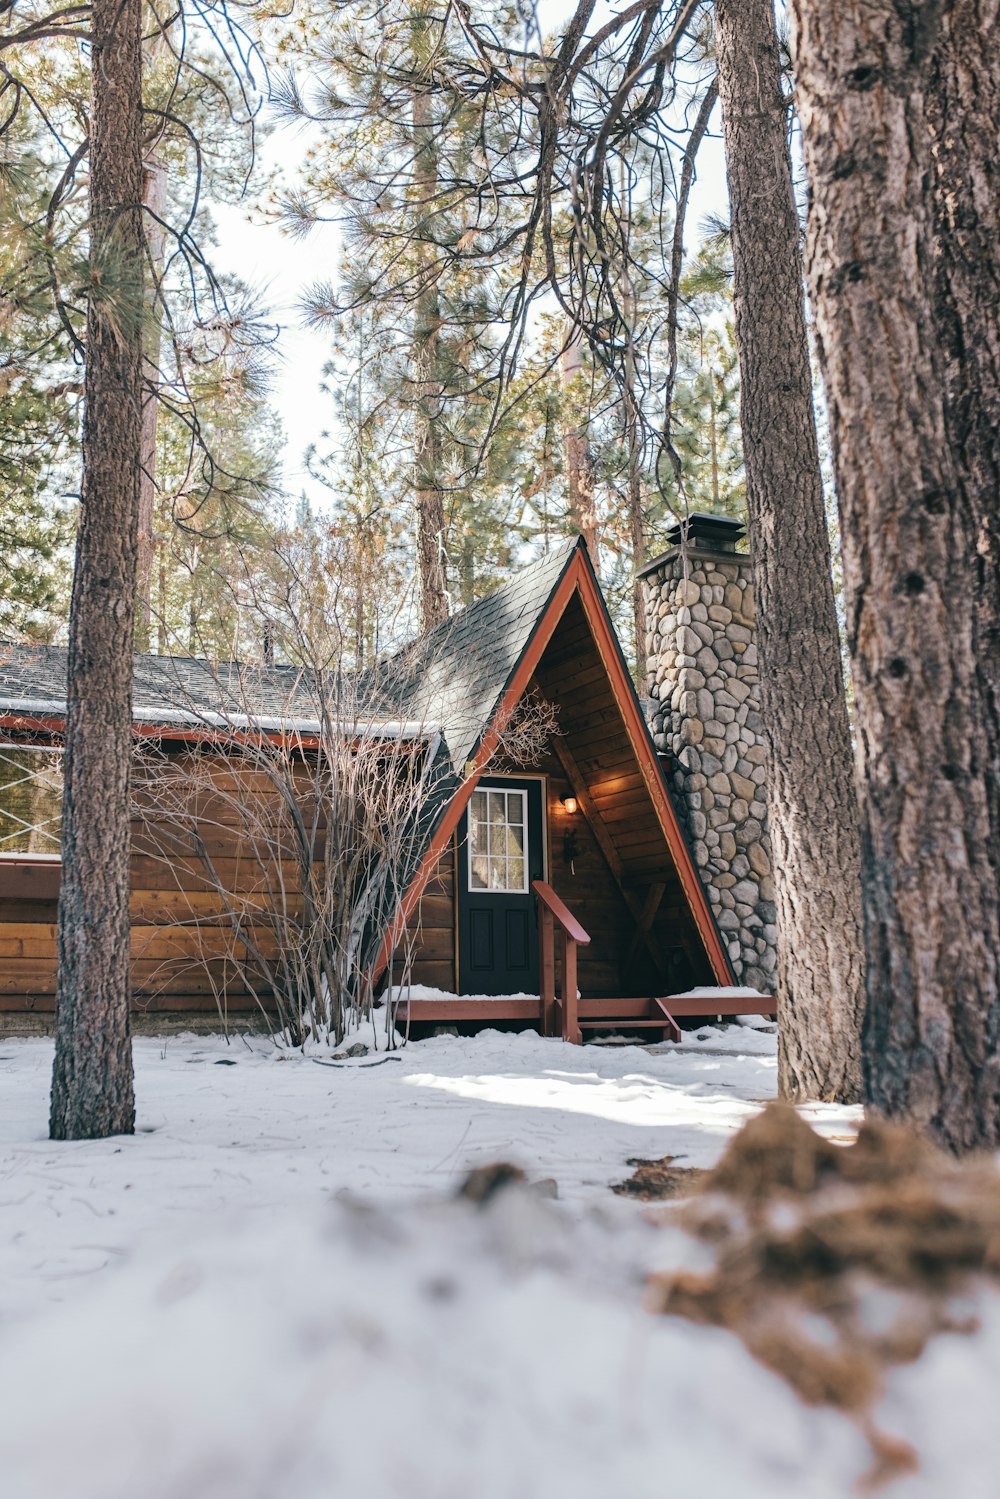 눈으로 뒤덮인 숲 한가운데에 있는 갈색 목조 주택